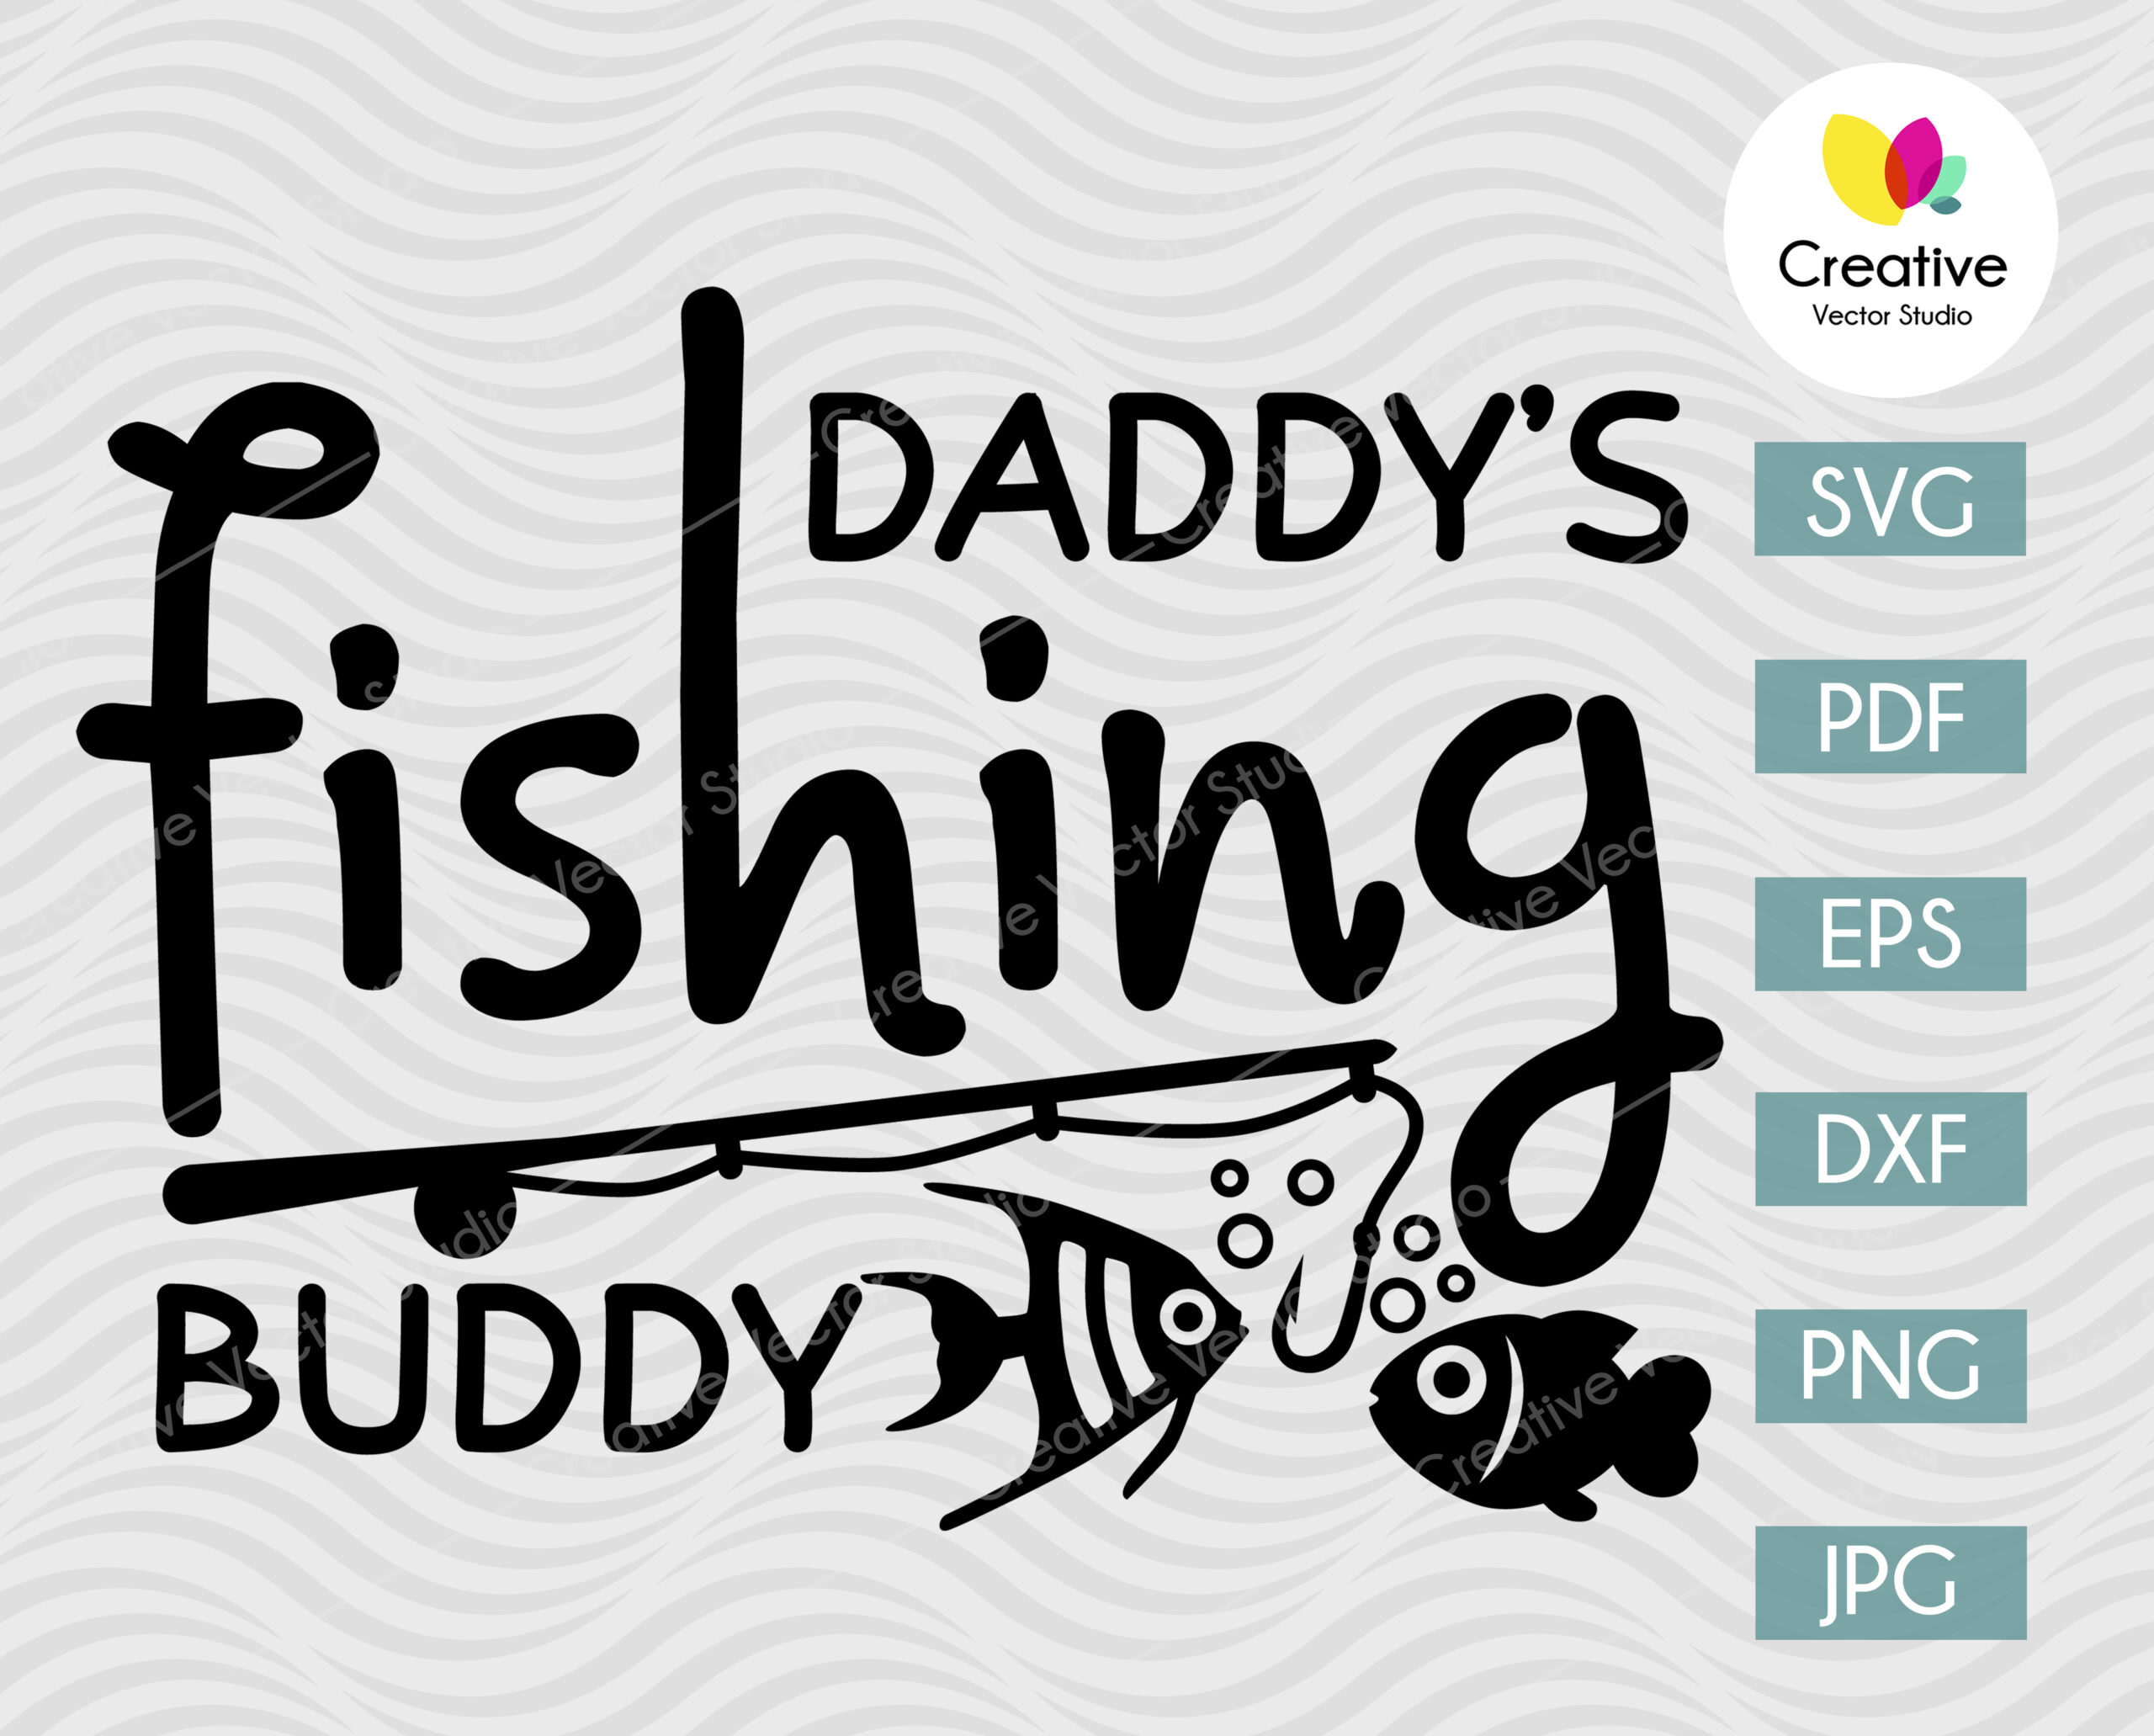 New Fishing Design Daddys Fishing Buddy